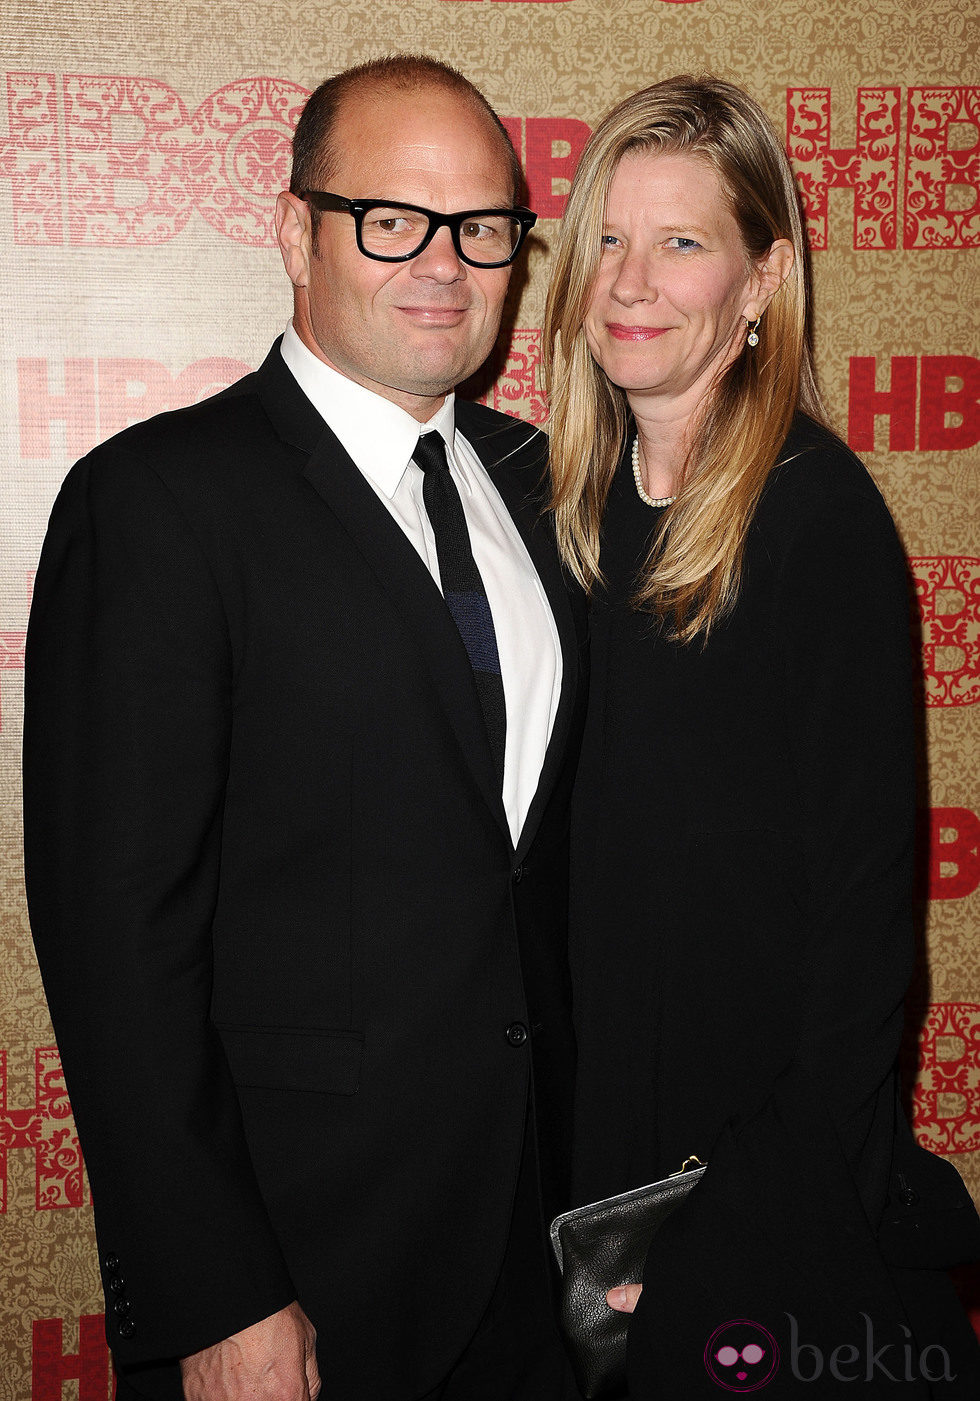 Chris Bauer y Laura Cunningham en la fiesta HBO posterior a los Globos de Oro